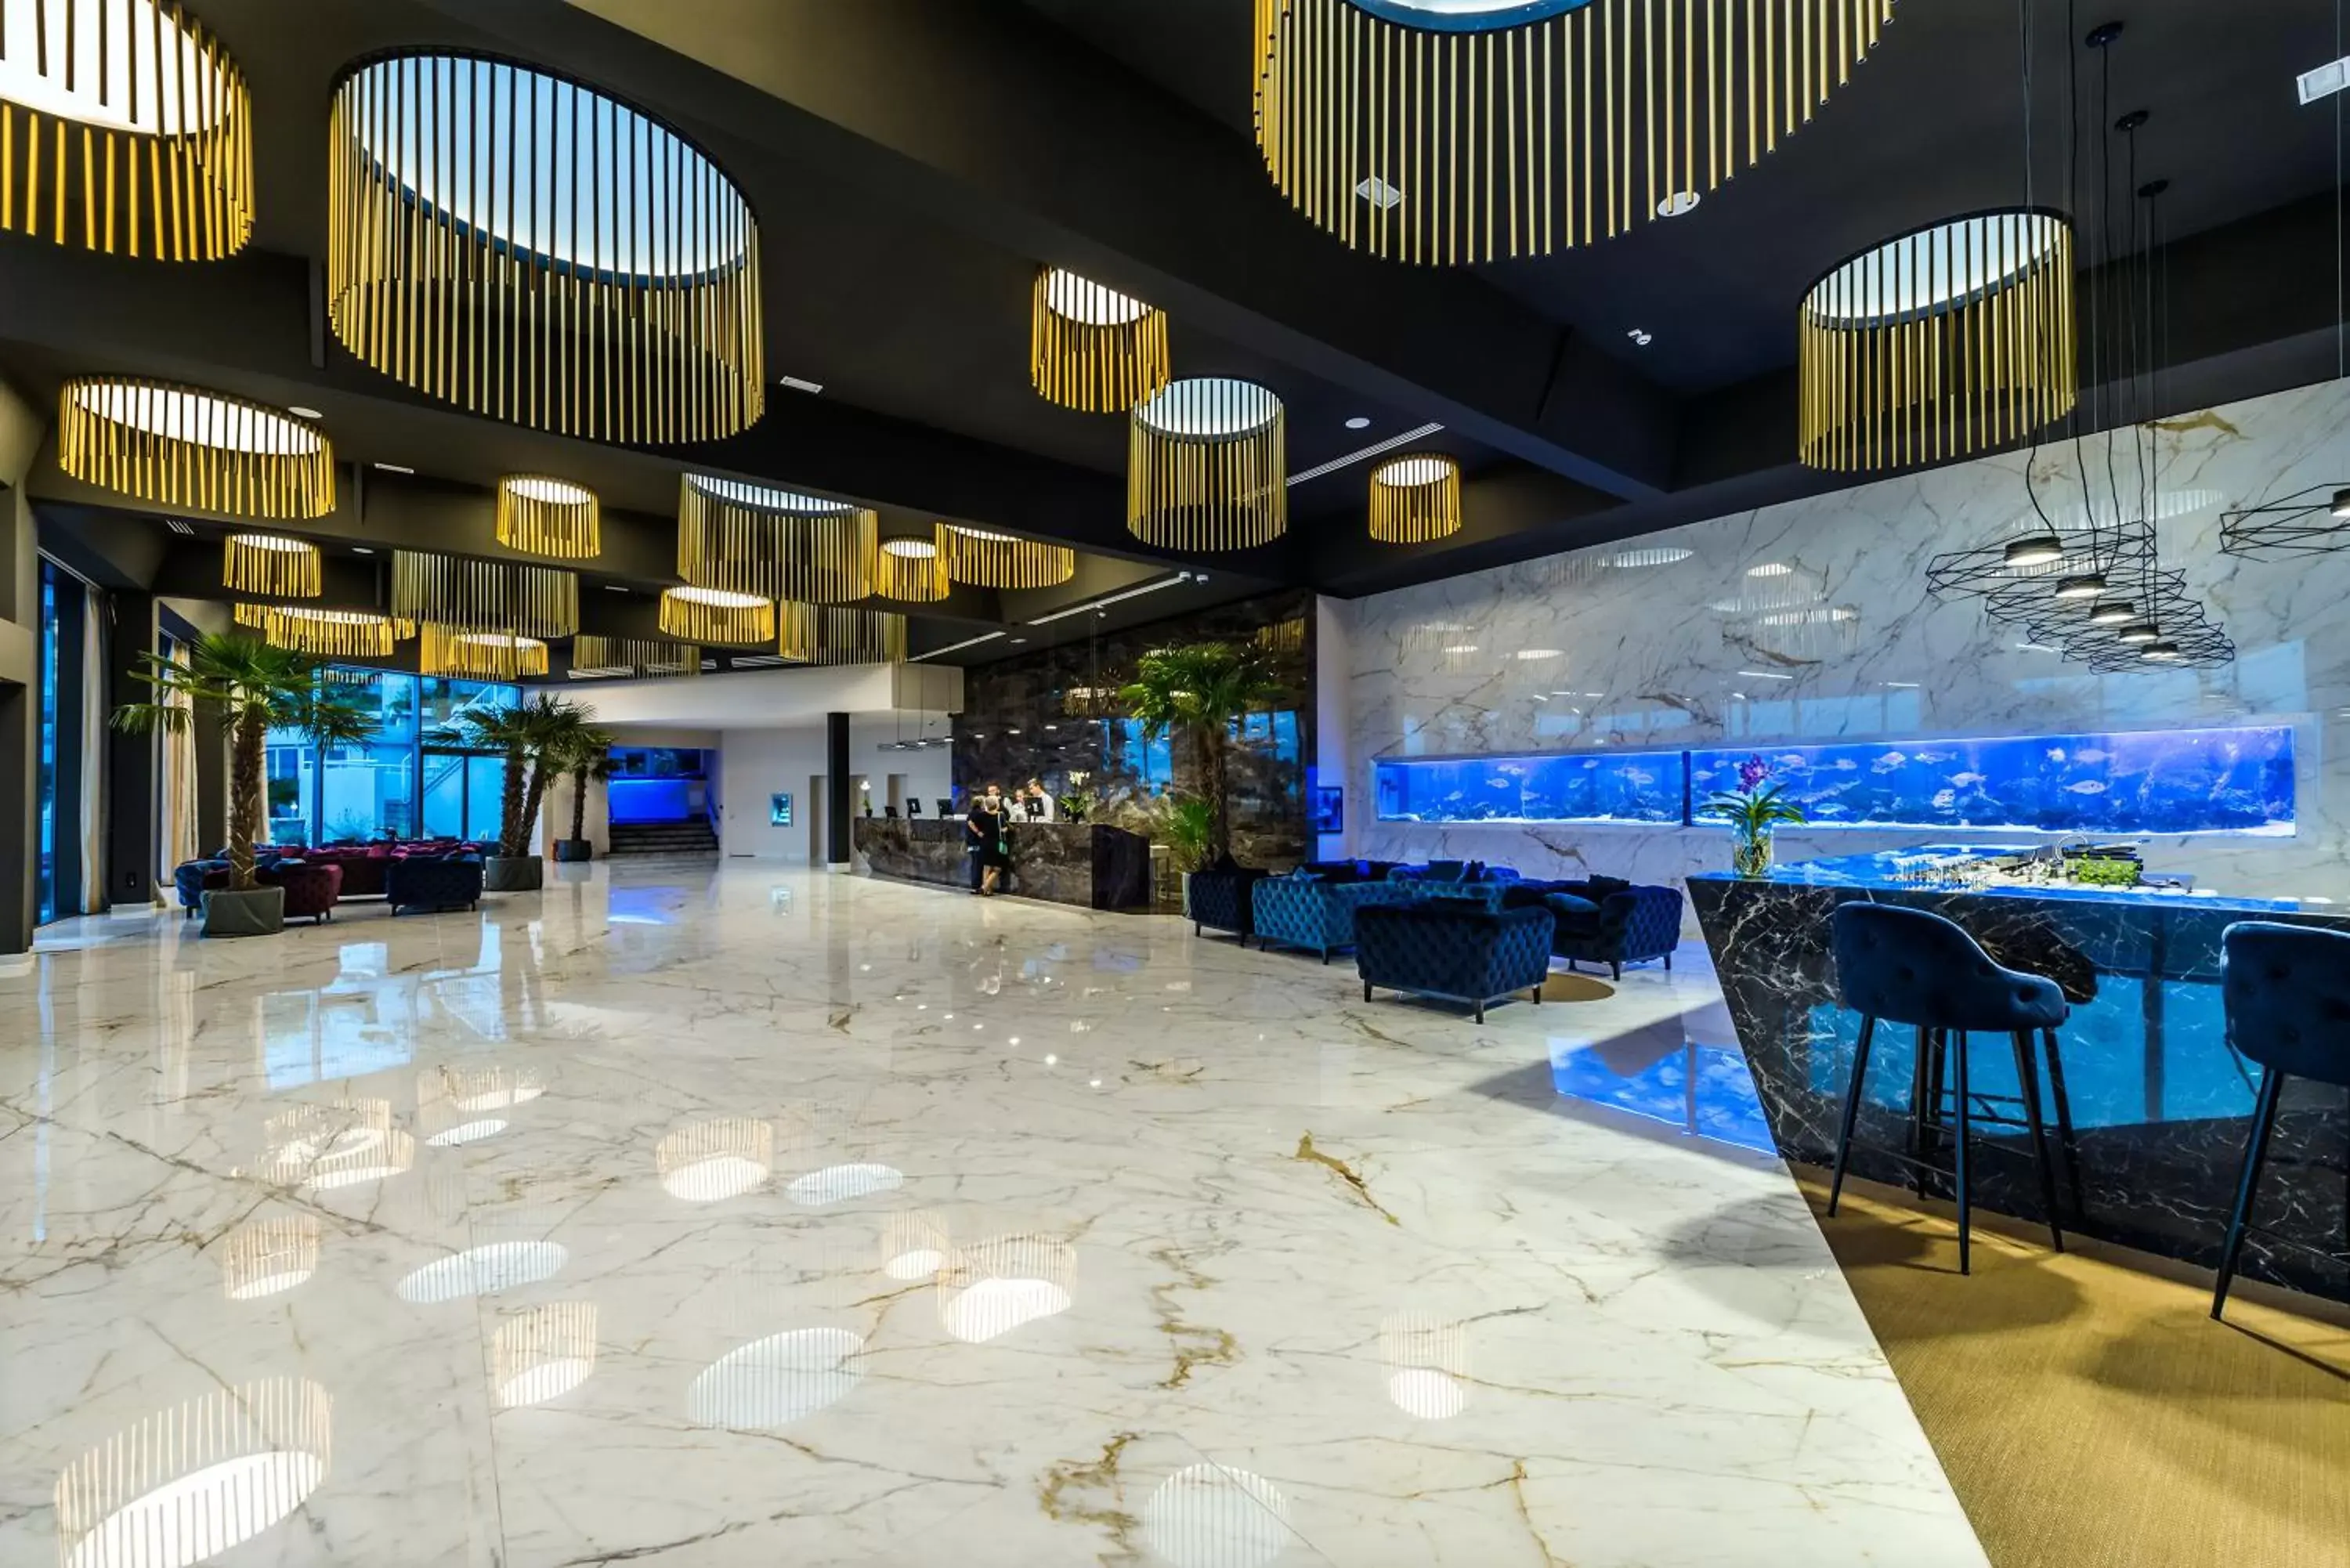 Lobby or reception in Grand Hotel Adriatic